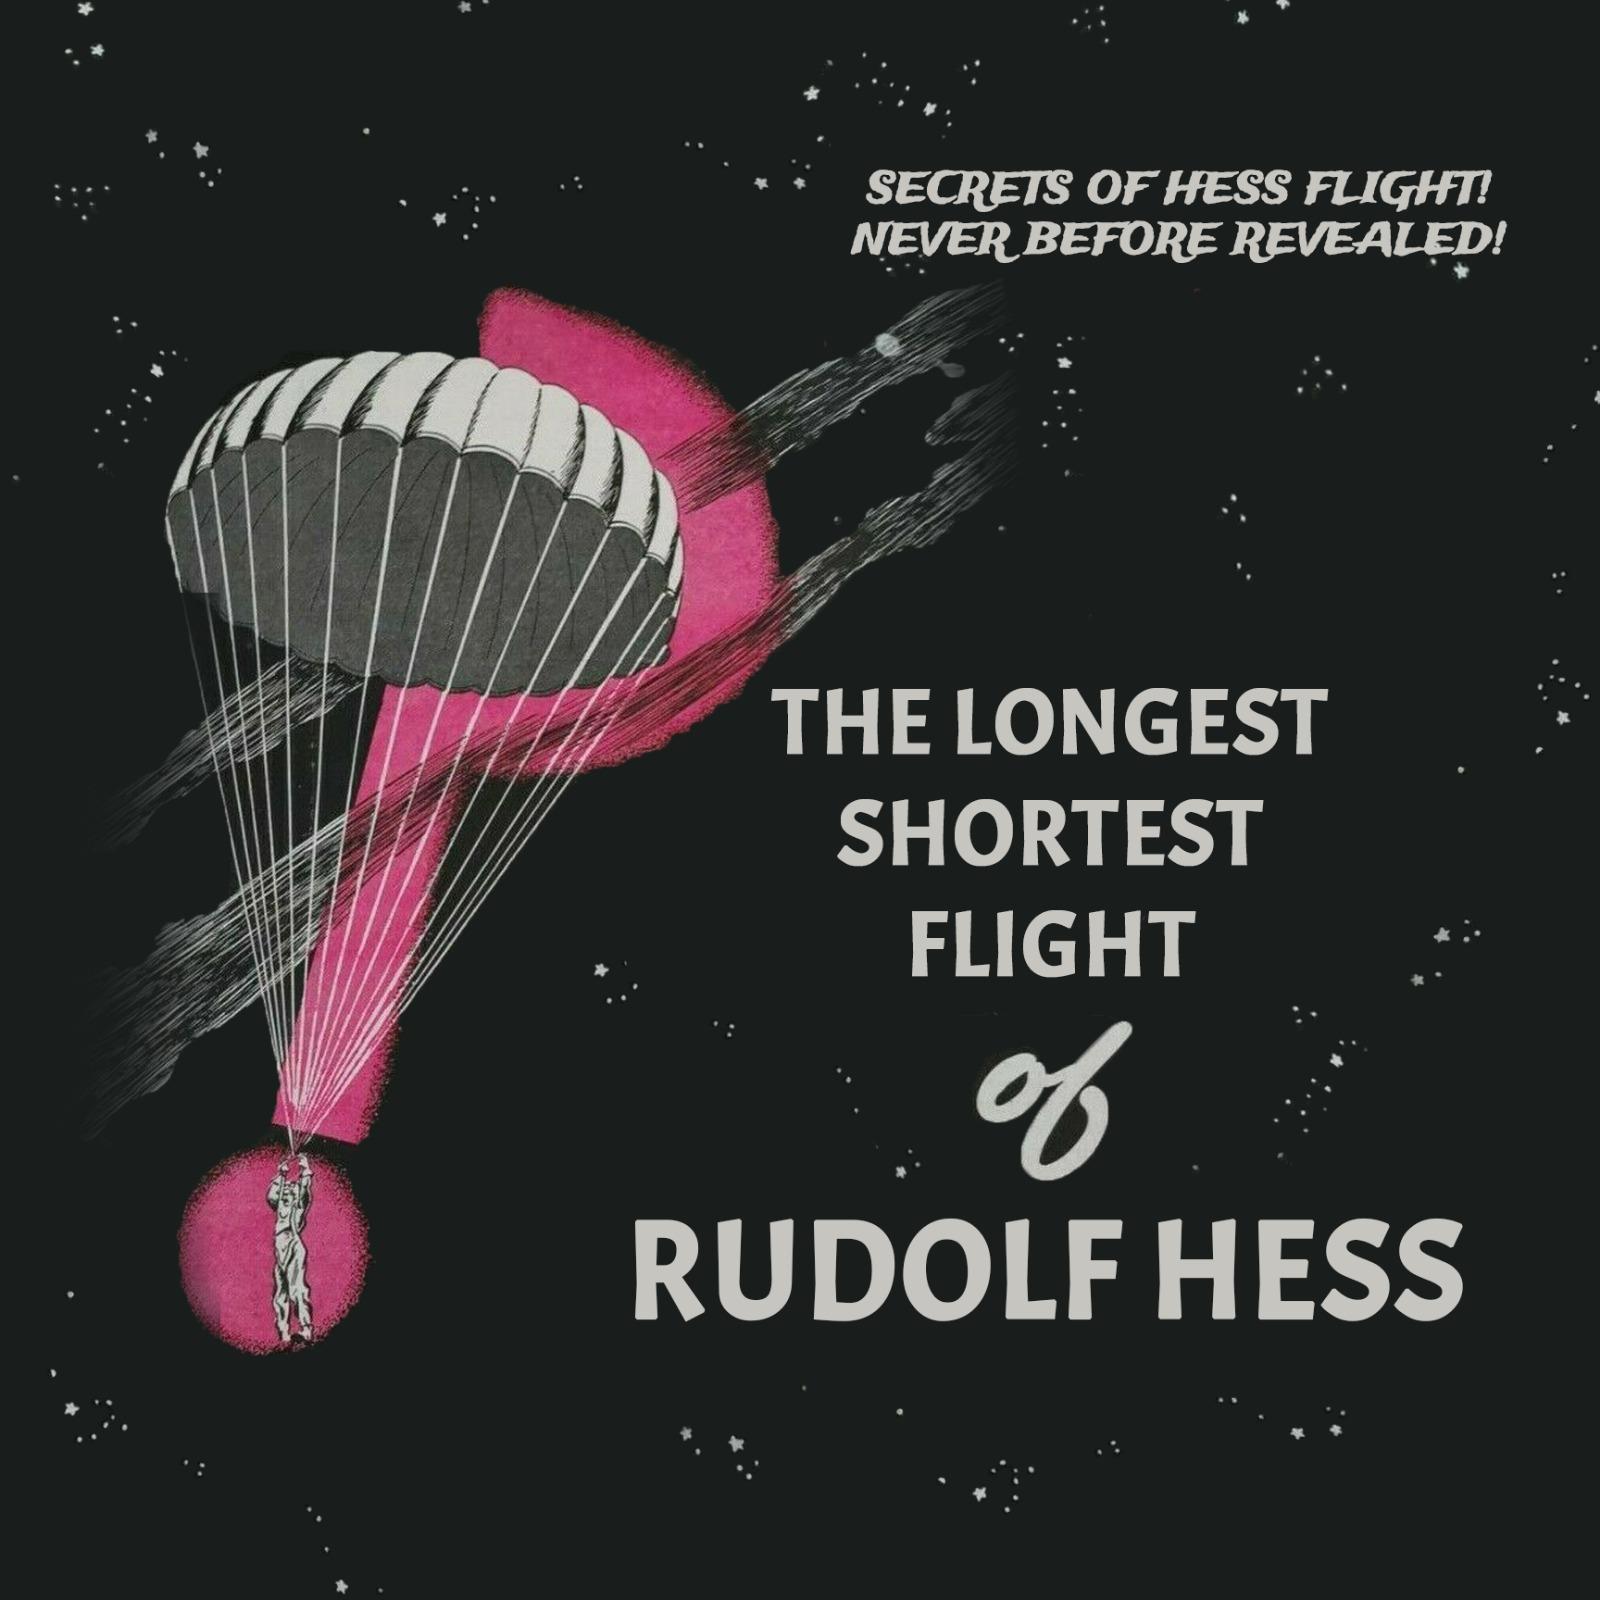 Thumbnail for "The longest shortest flight of Rudolf Hess".